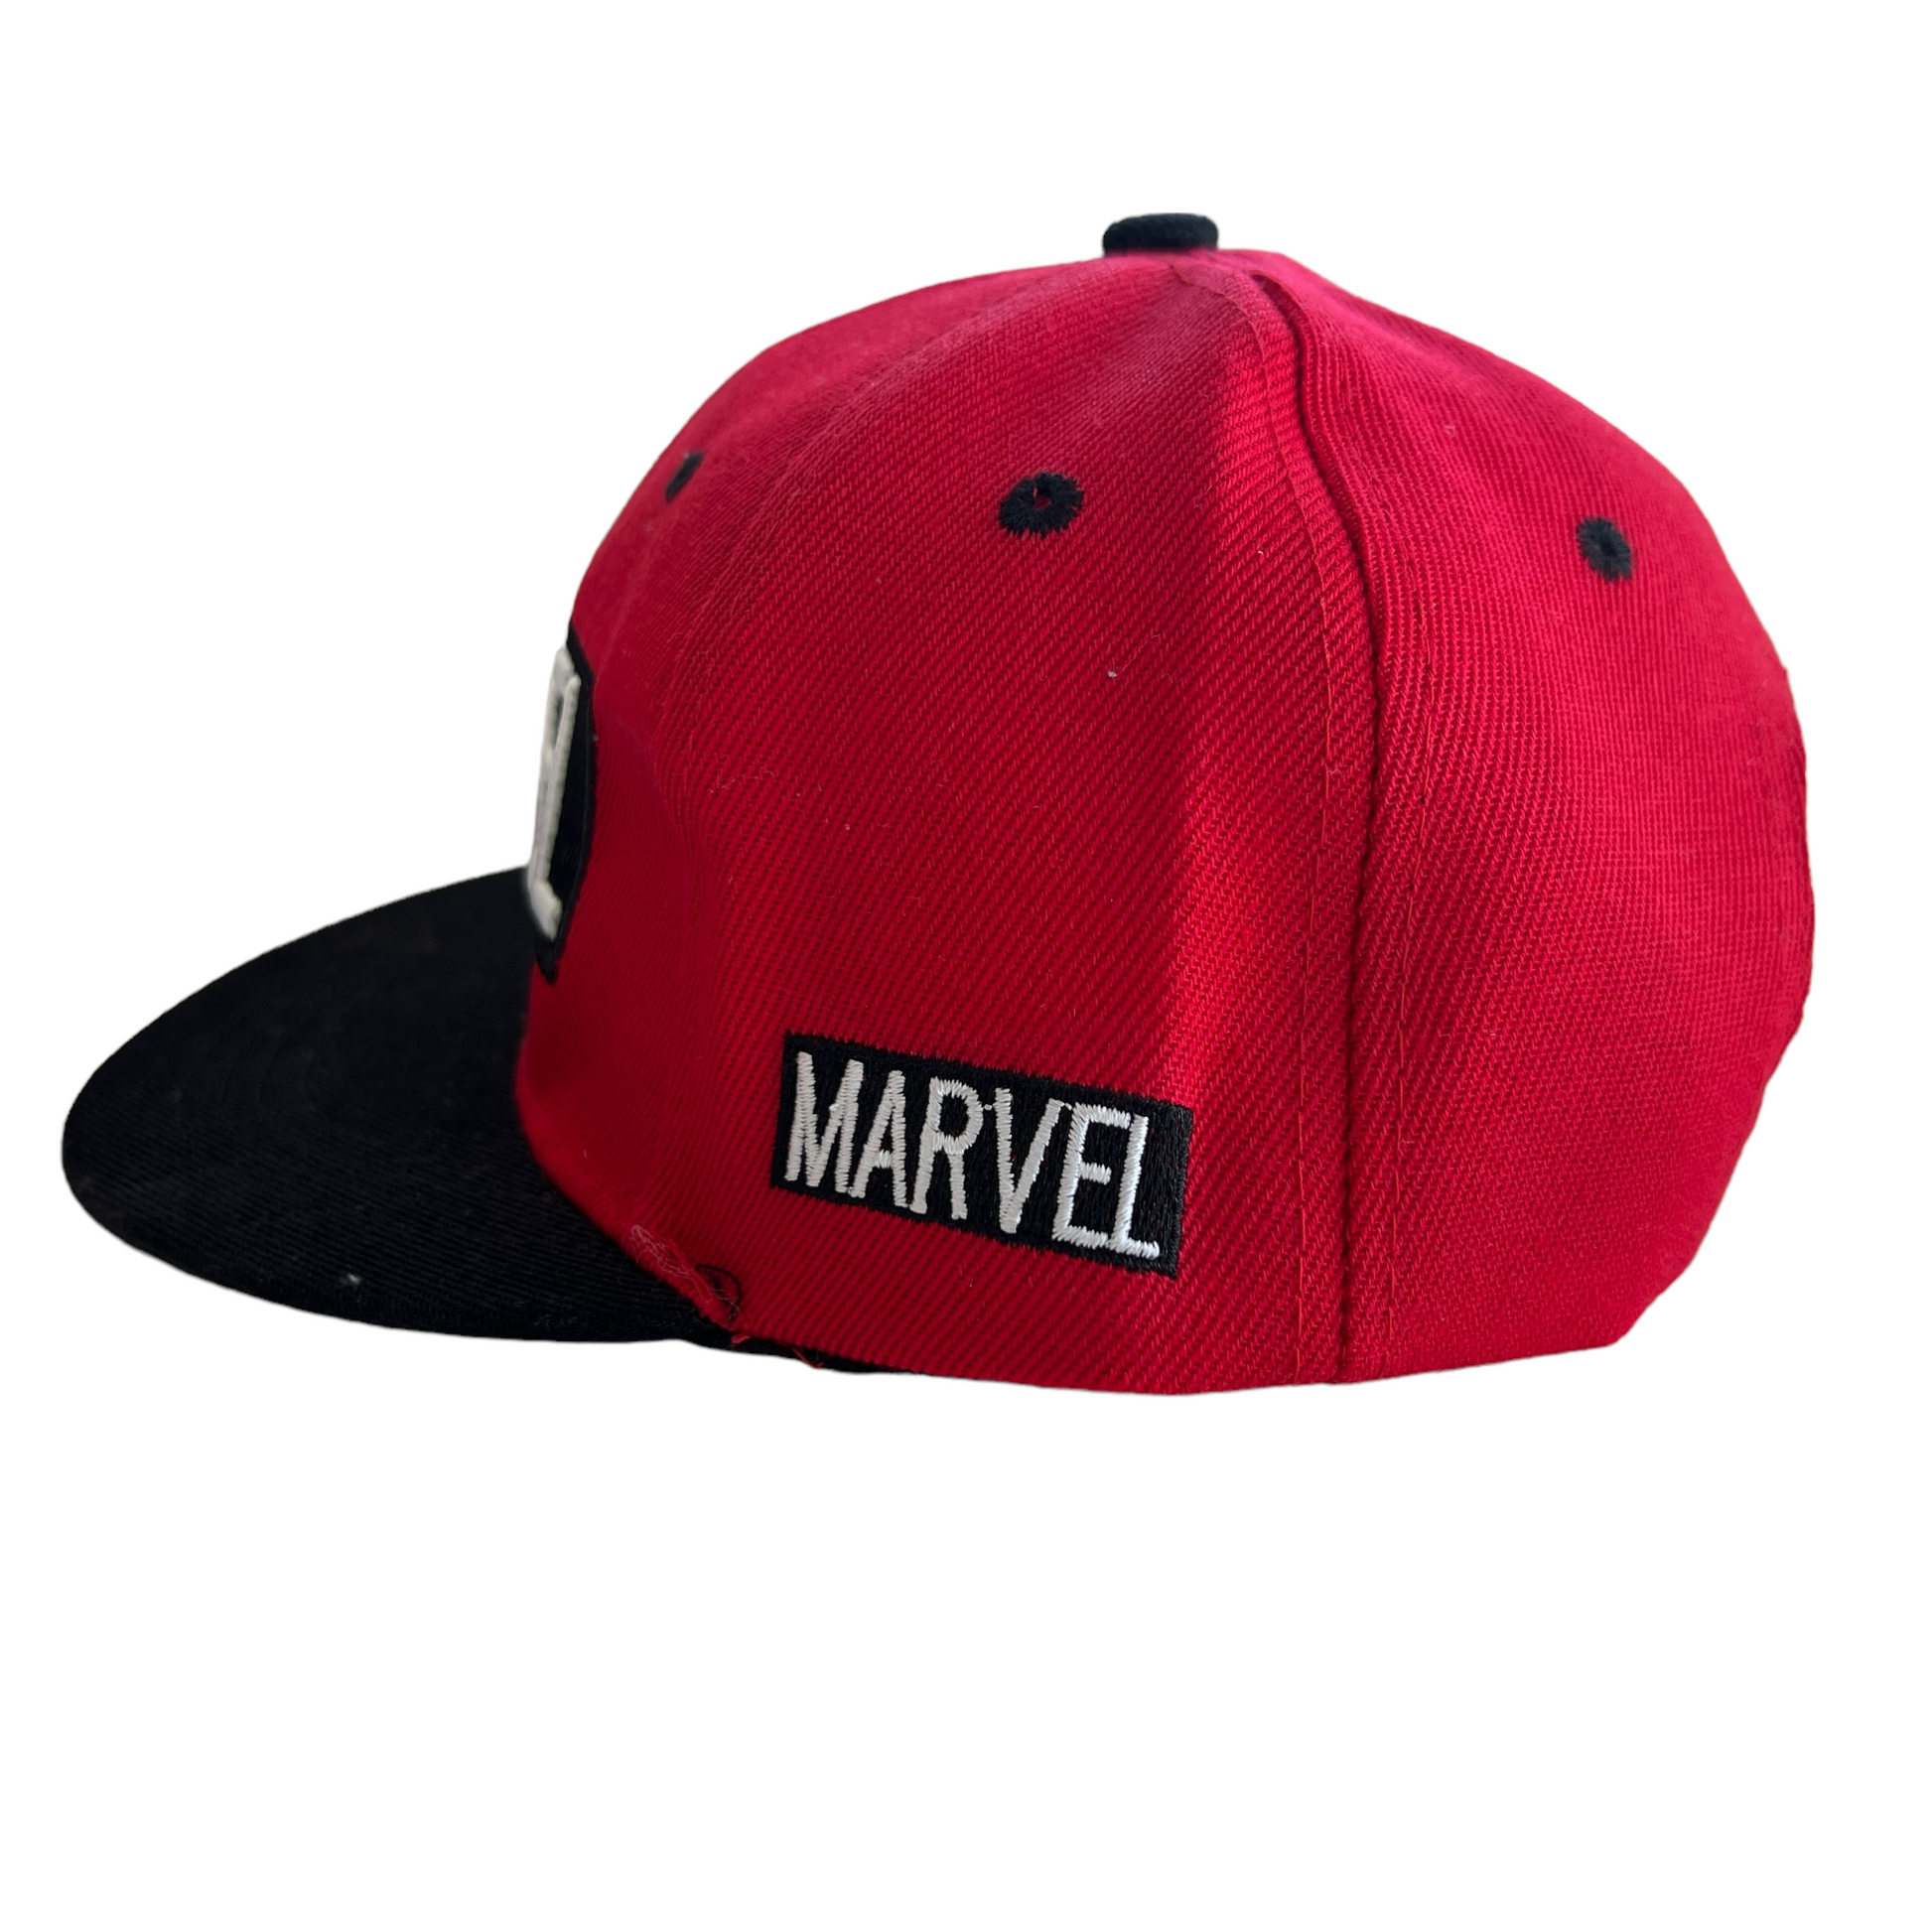 Marvel Series Hats  SPIRIT SPARKPLUGS   